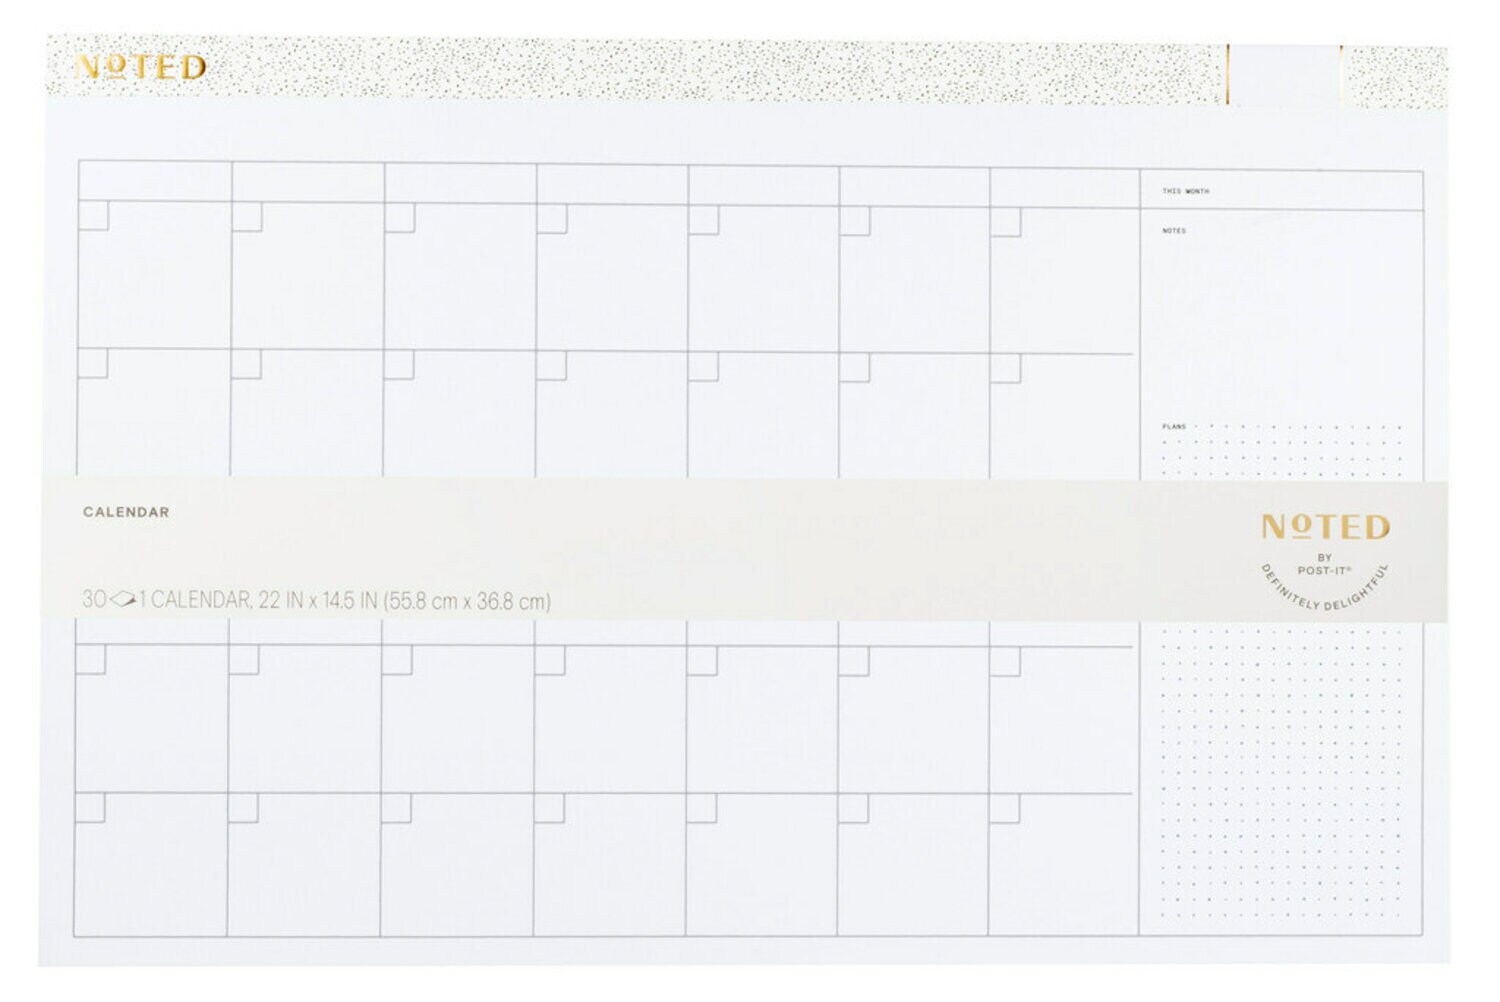 7100265100 - Post-it Calendar NTD5-CAL, 22 in x 14.5 in (55.8 cm x 36.8 cm)